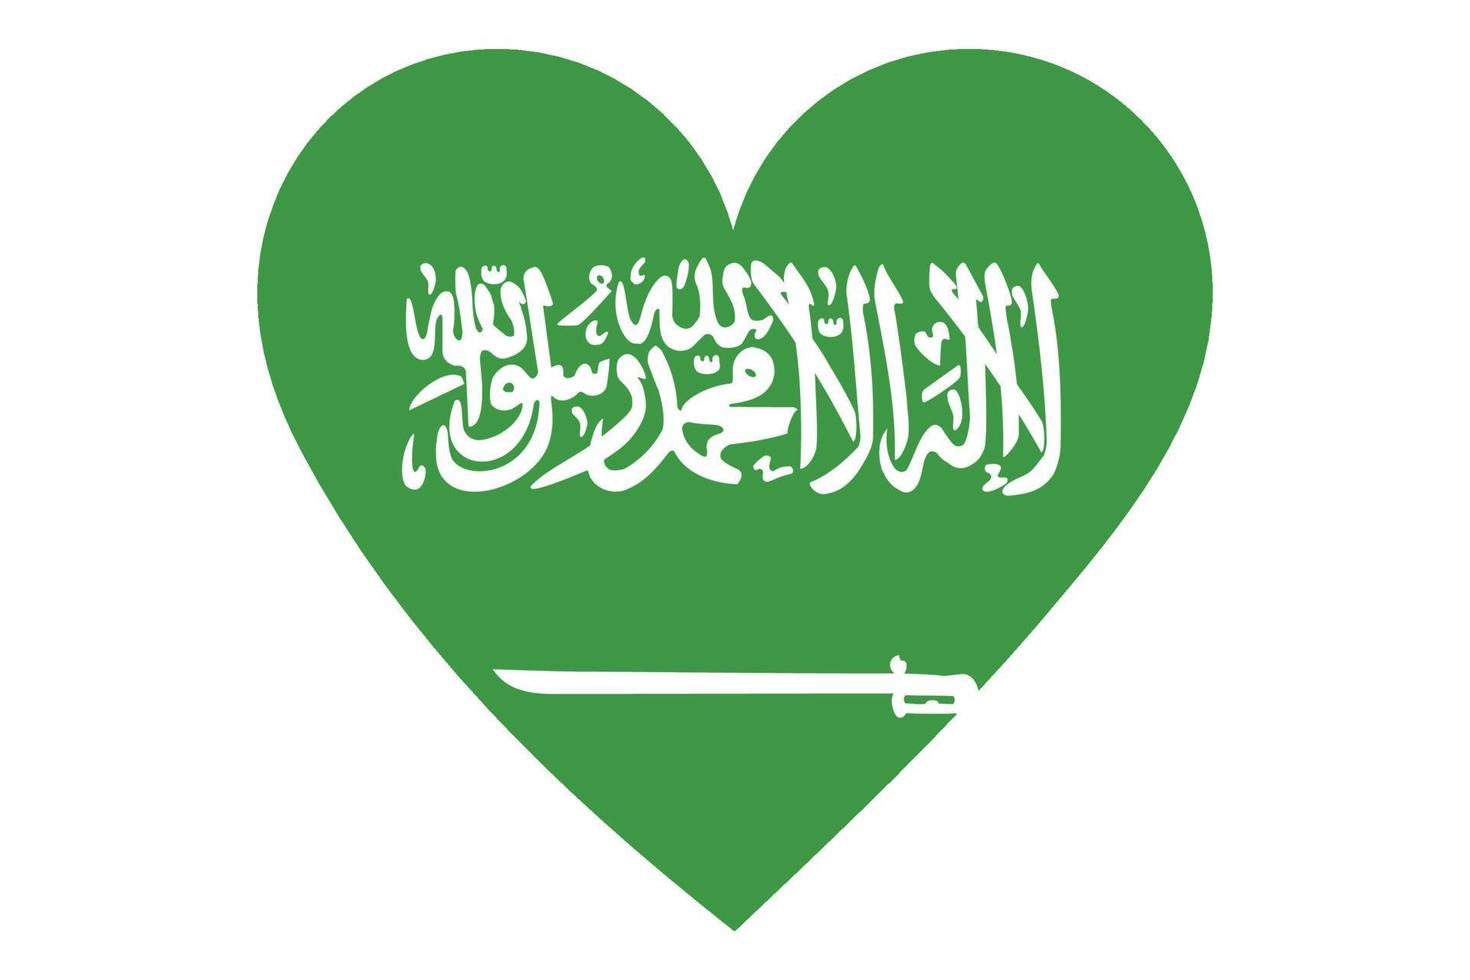 hart vlag vector van saoedi-arabië op witte achtergrond.